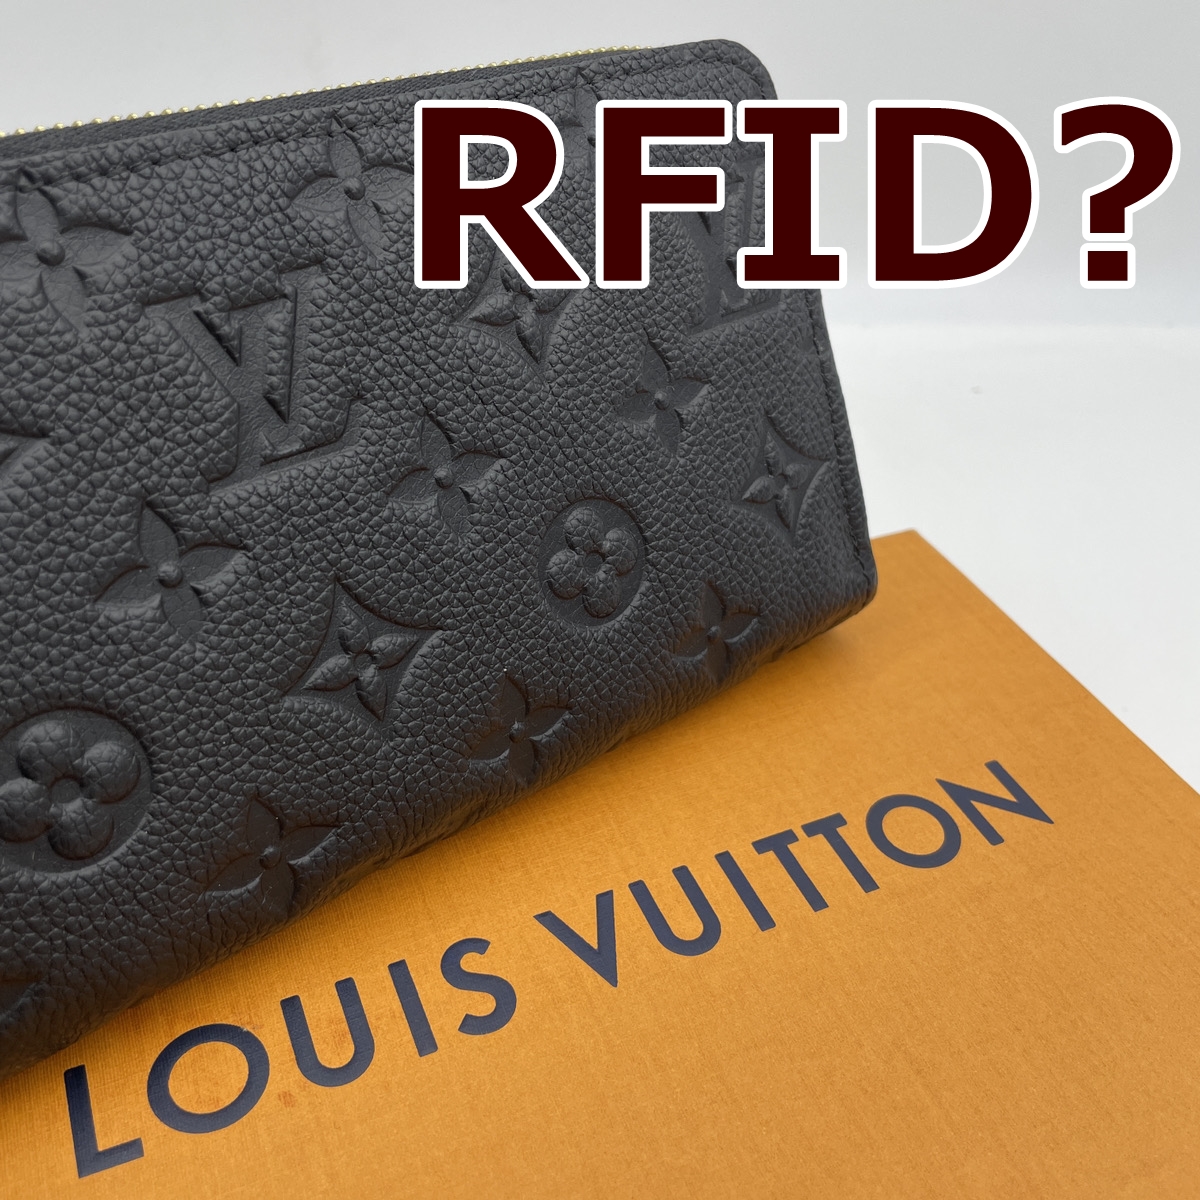 ルイヴィトン、RFID(ICチップ)導入でシリアルナンバーが消滅 